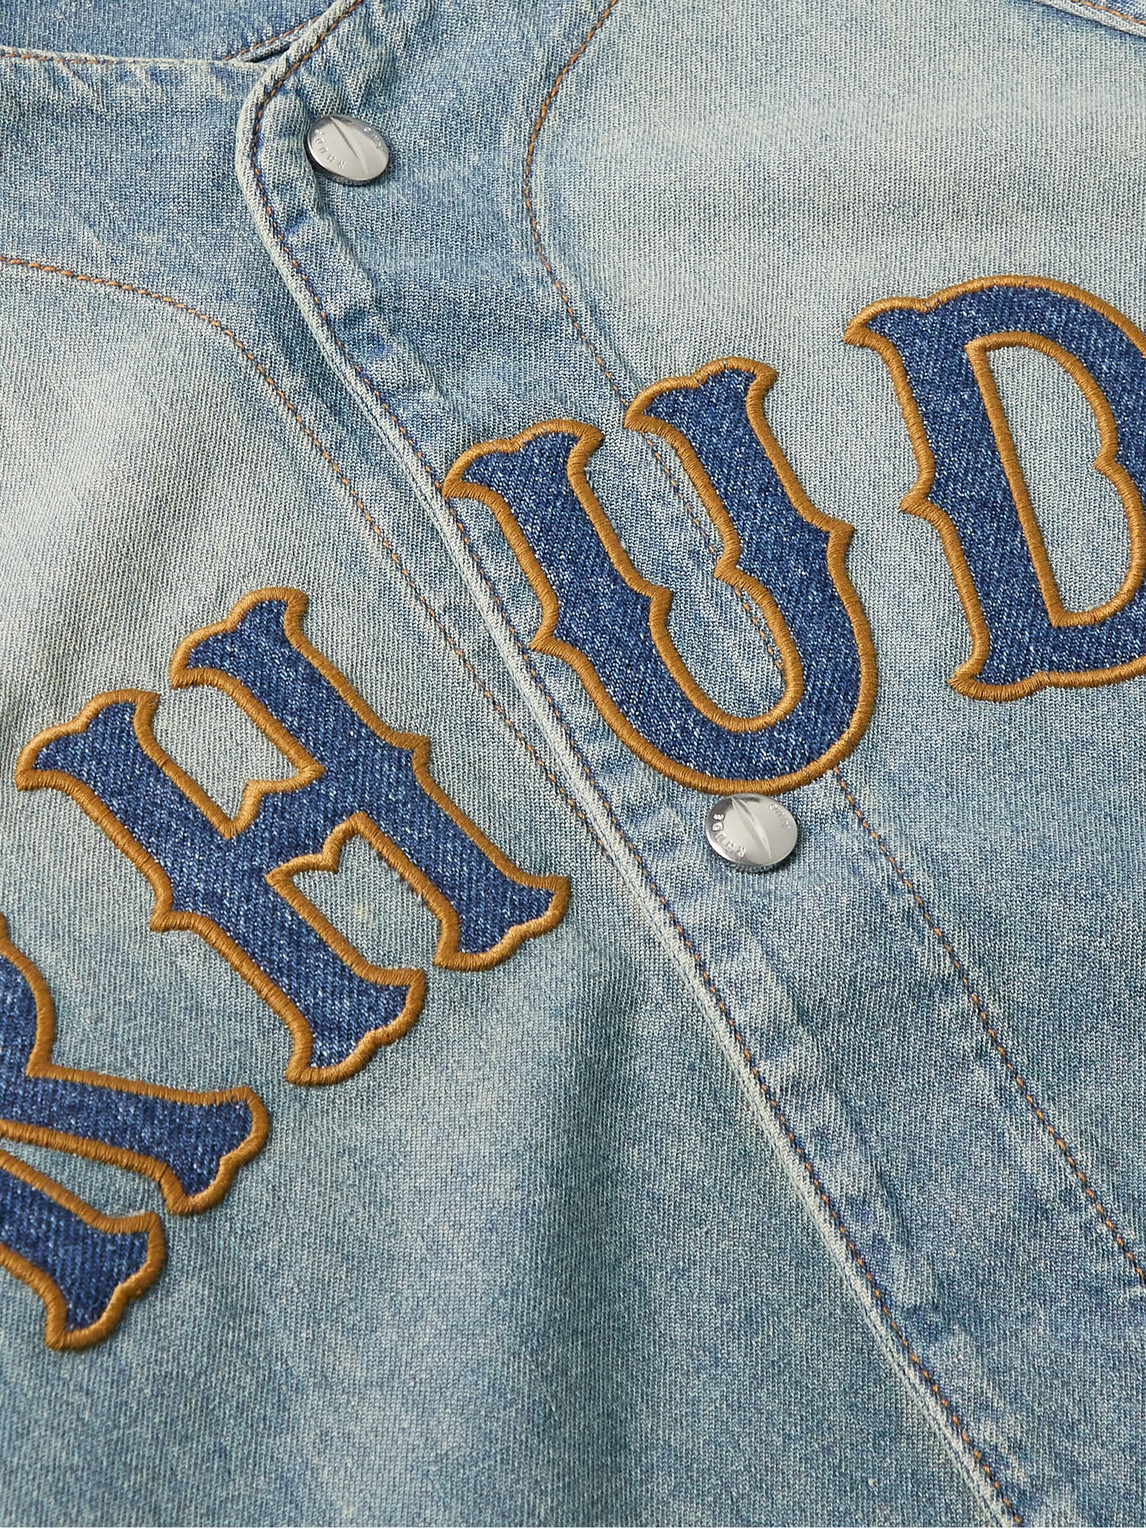 Shop Rhude Logo-appliquéd Denim Shirt In Blue